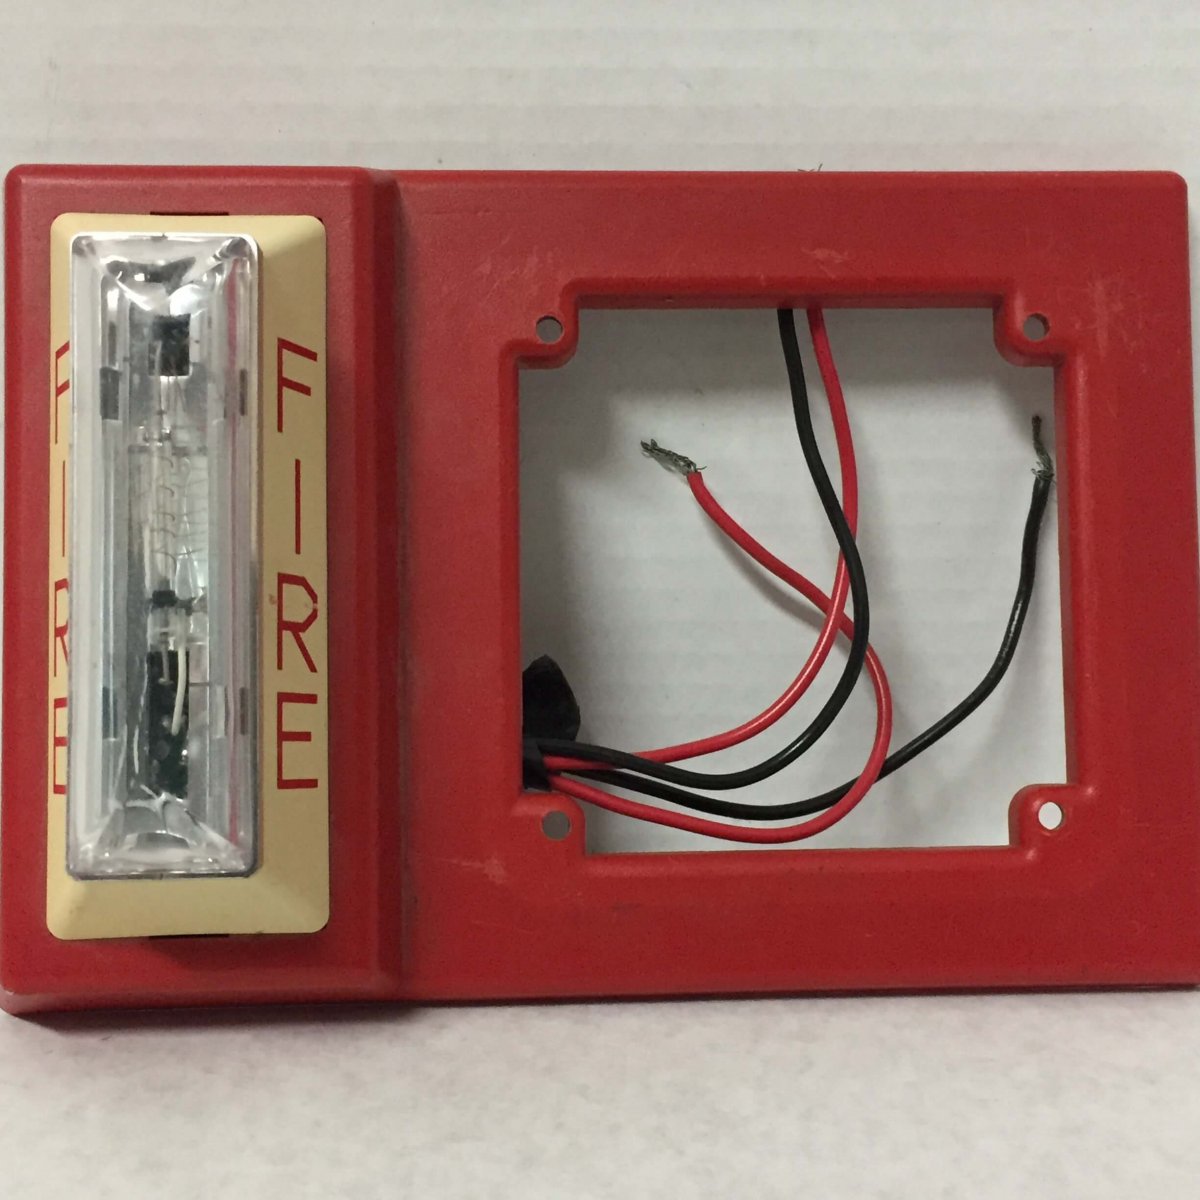 Simplex 4903-9105 - FireAlarms.tv - jjinc24/U8oL0's Fire Alarm ...